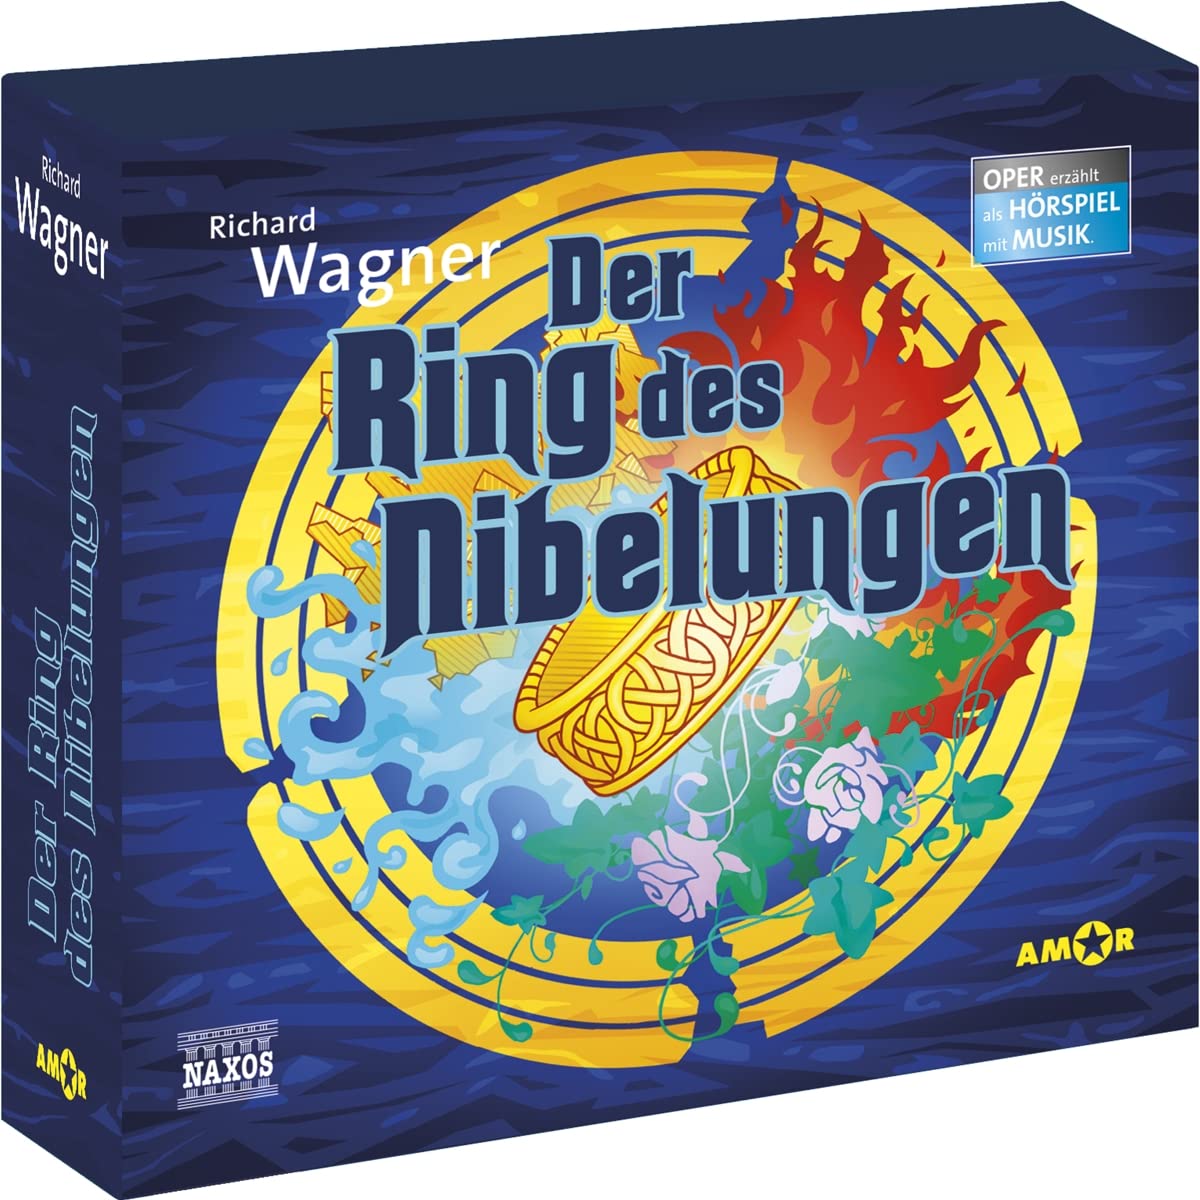 Audio Cd Richard Wagner - Der Ring Des Nibelungen 4 Cd NUOVO SIGILLATO EDIZIONE DEL SUBITO DISPONIBILE